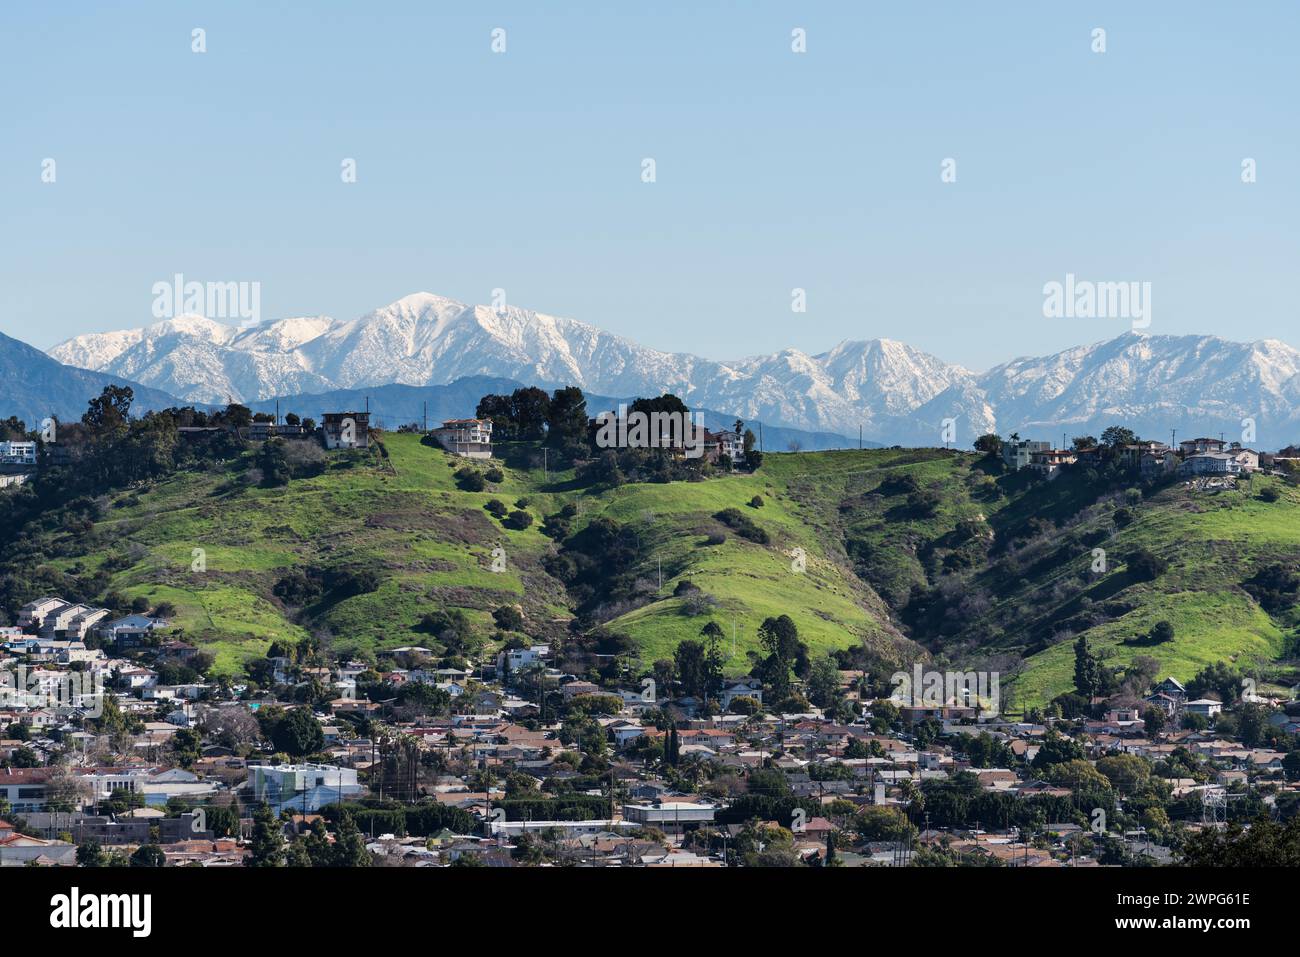 Das Viertel Los Angeles Mt Washington mit schneebedeckten Gipfeln der San Gabriel Mountains im Hintergrund. Stockfoto